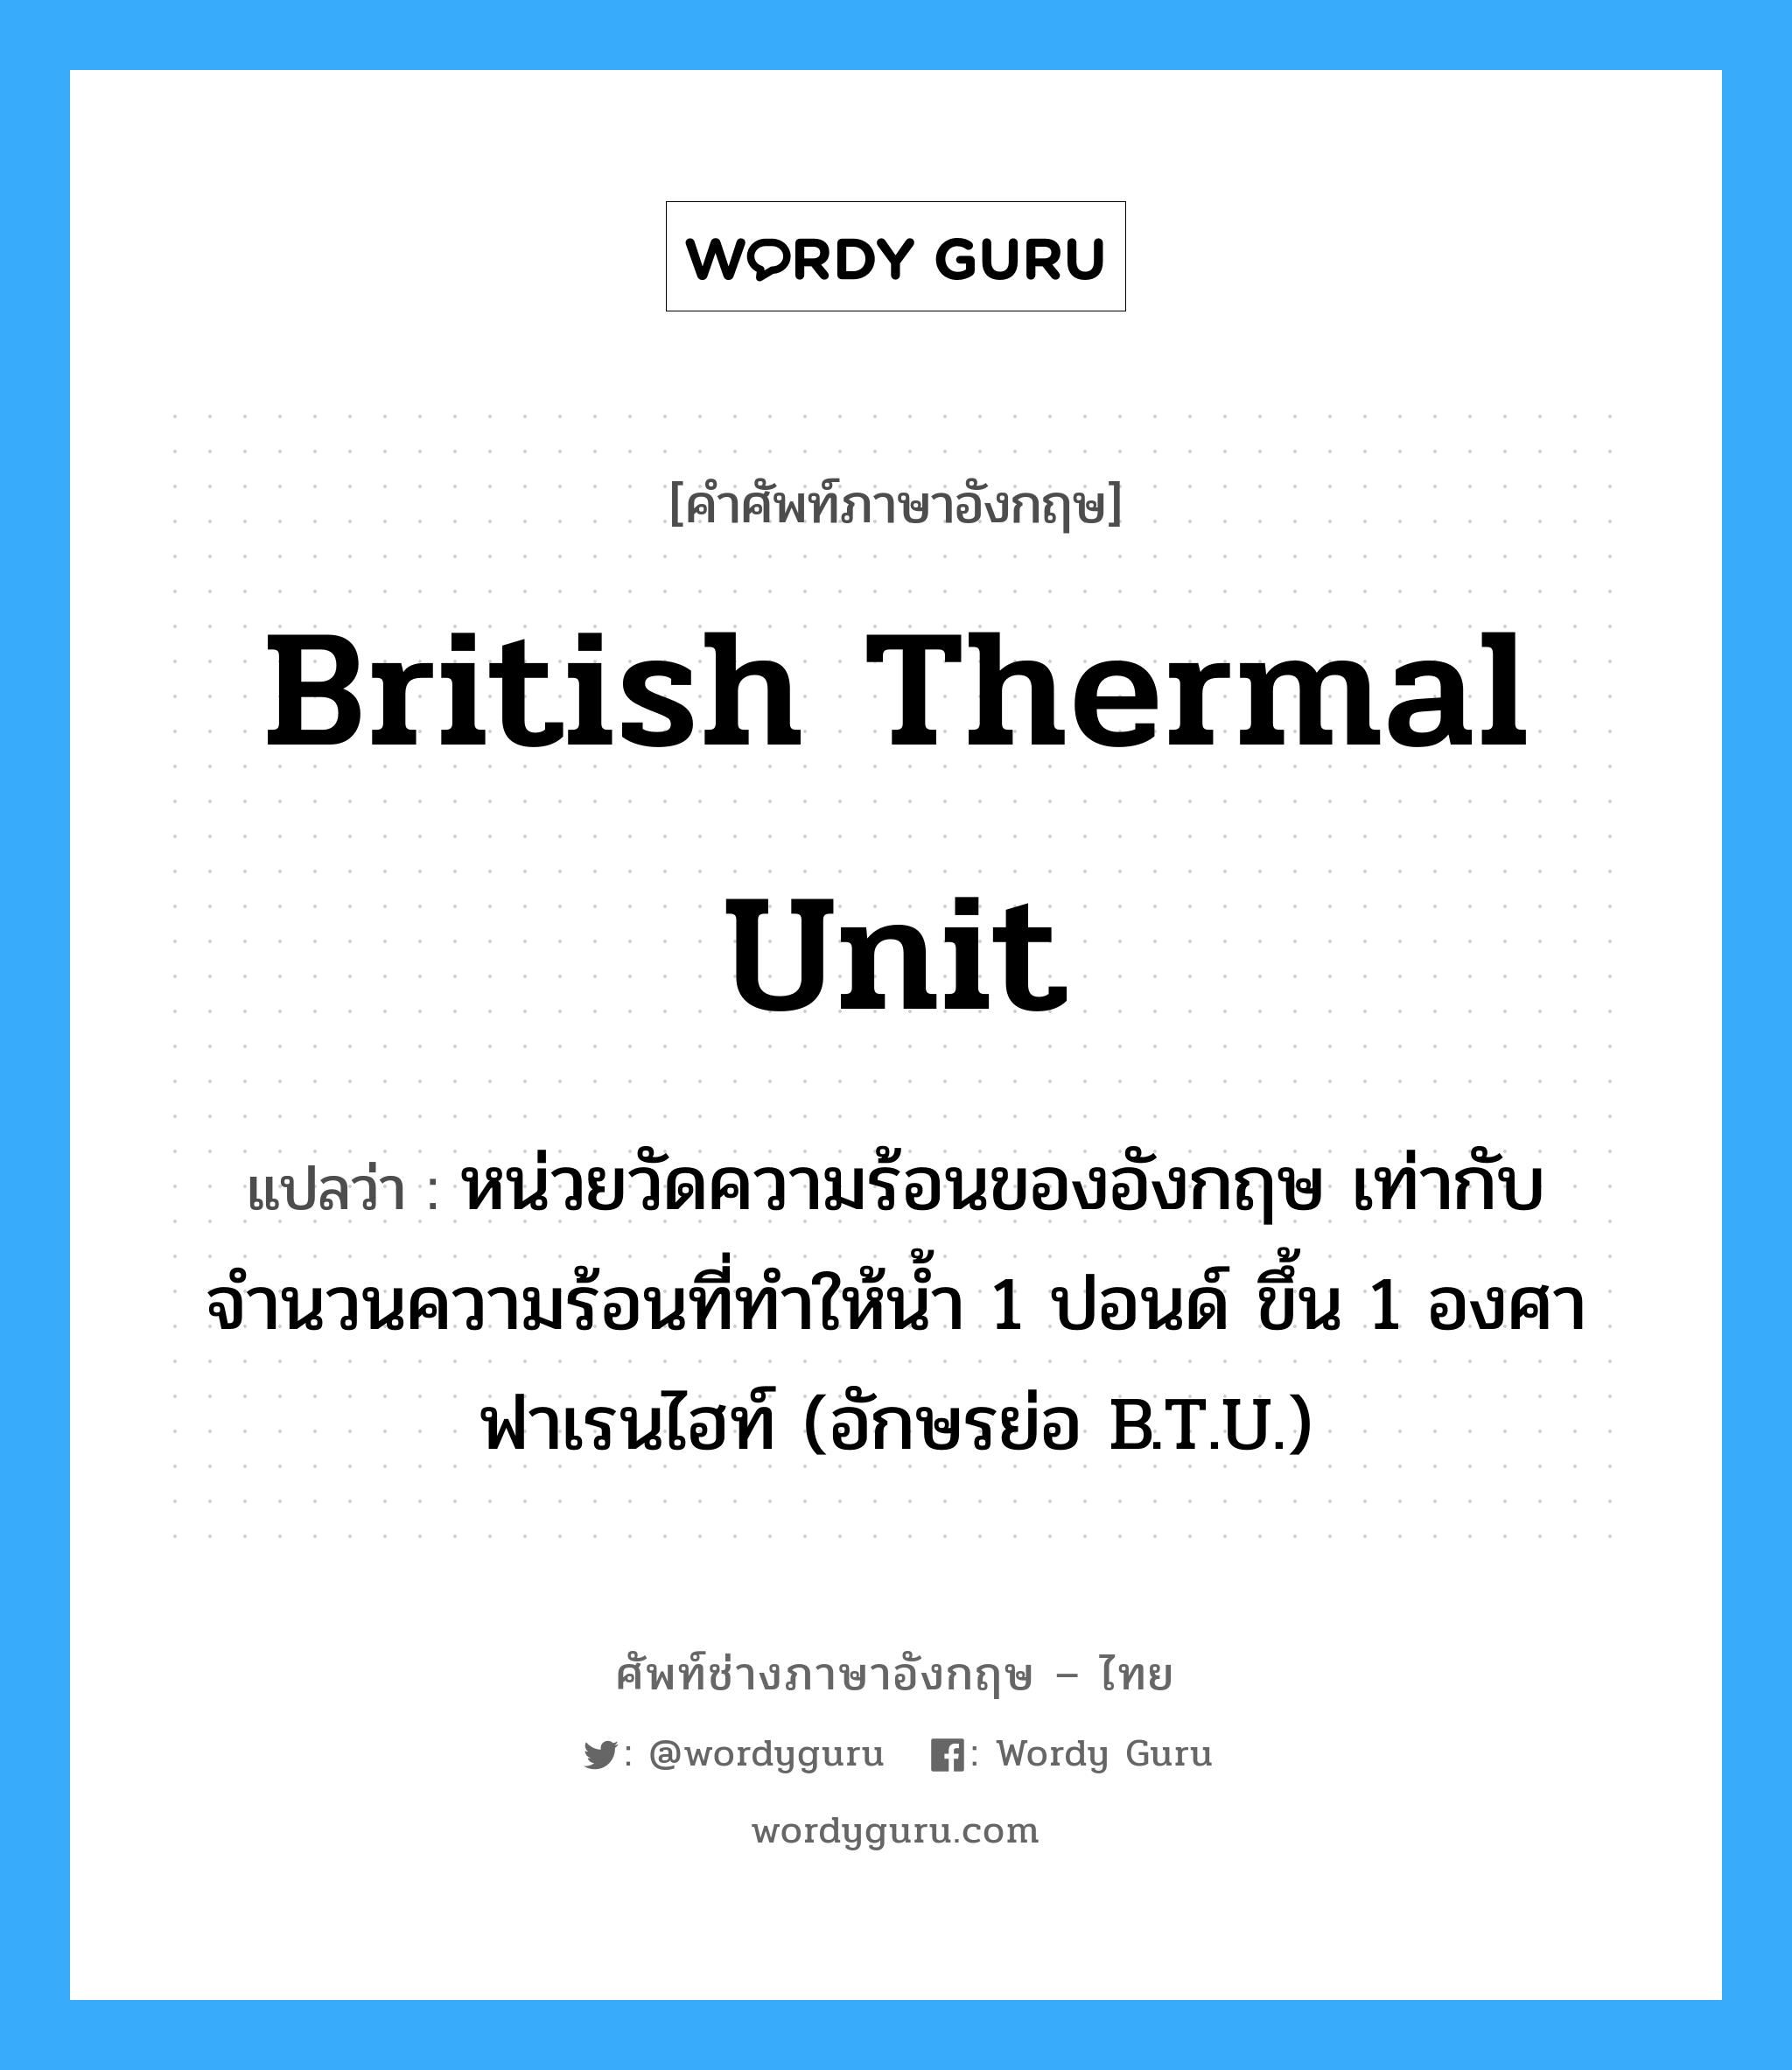 British Thermal Unit แปลว่า?, คำศัพท์ช่างภาษาอังกฤษ - ไทย British Thermal Unit คำศัพท์ภาษาอังกฤษ British Thermal Unit แปลว่า หน่วยวัดความร้อนของอังกฤษ เท่ากับจำนวนความร้อนที่ทำให้น้ำ 1 ปอนด์ ขึ้น 1 องศาฟาเรนไฮท์ (อักษรย่อ B.T.U.)